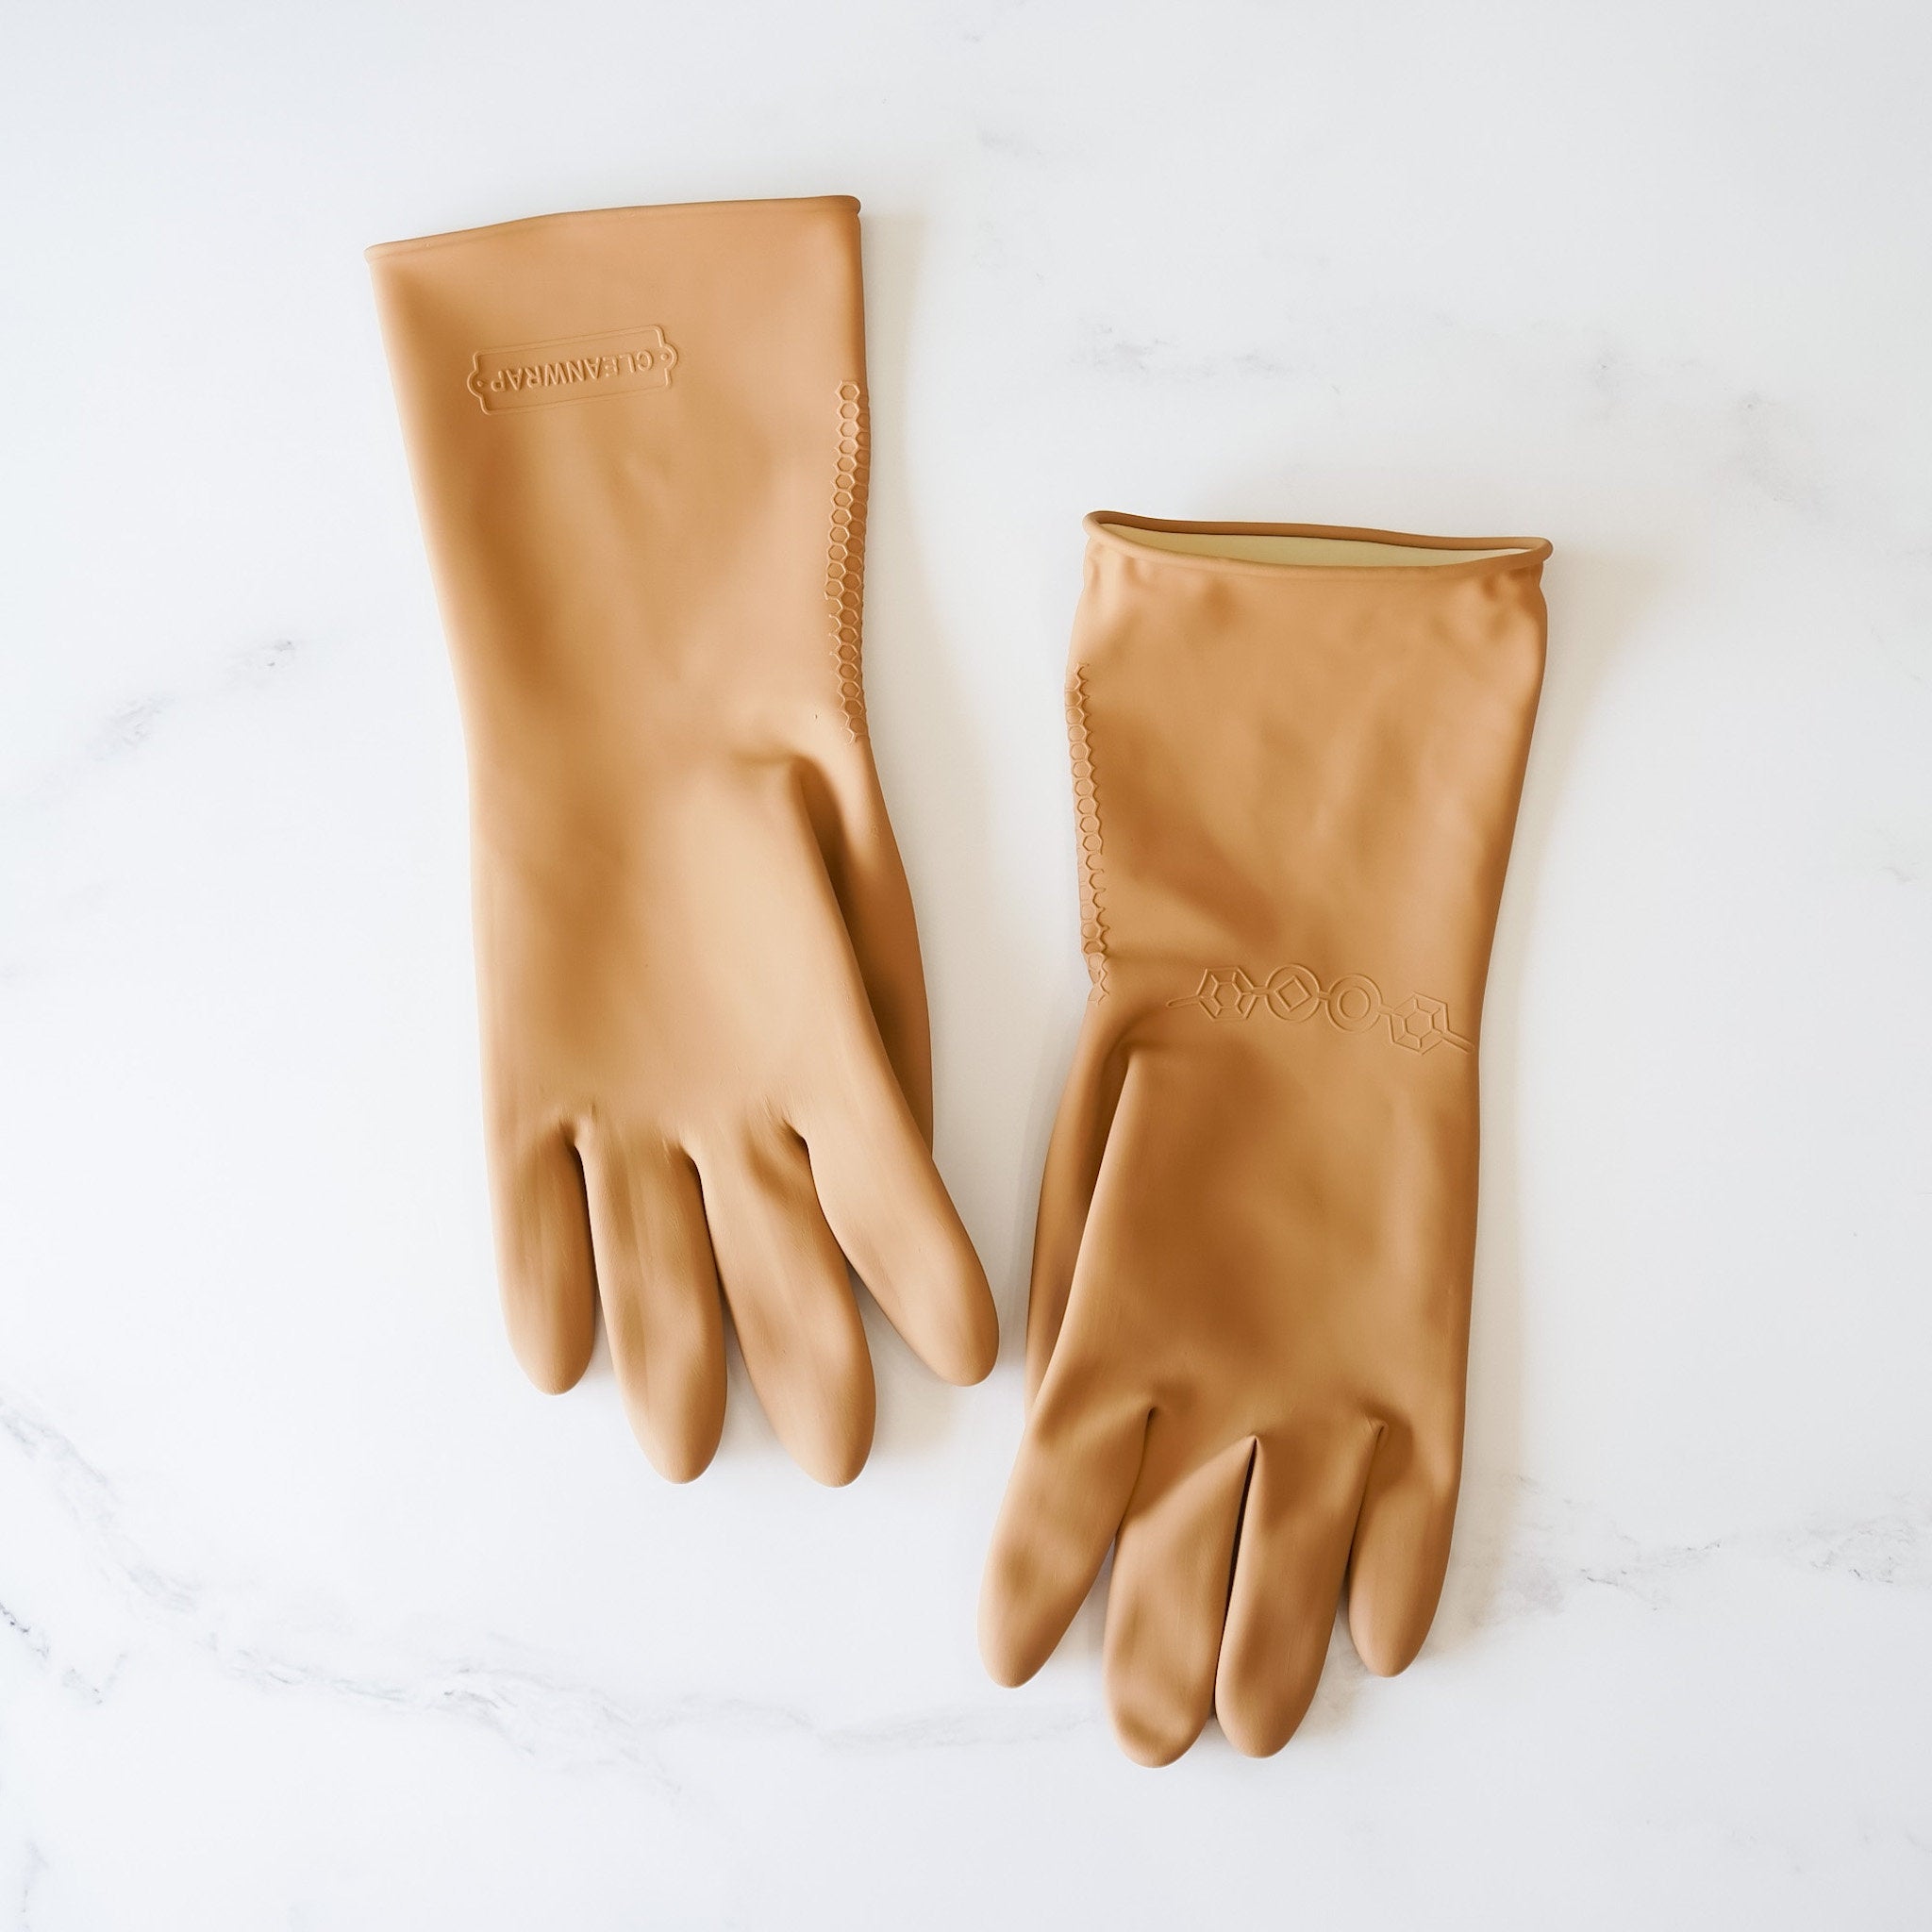 dishwashing gloves in beige